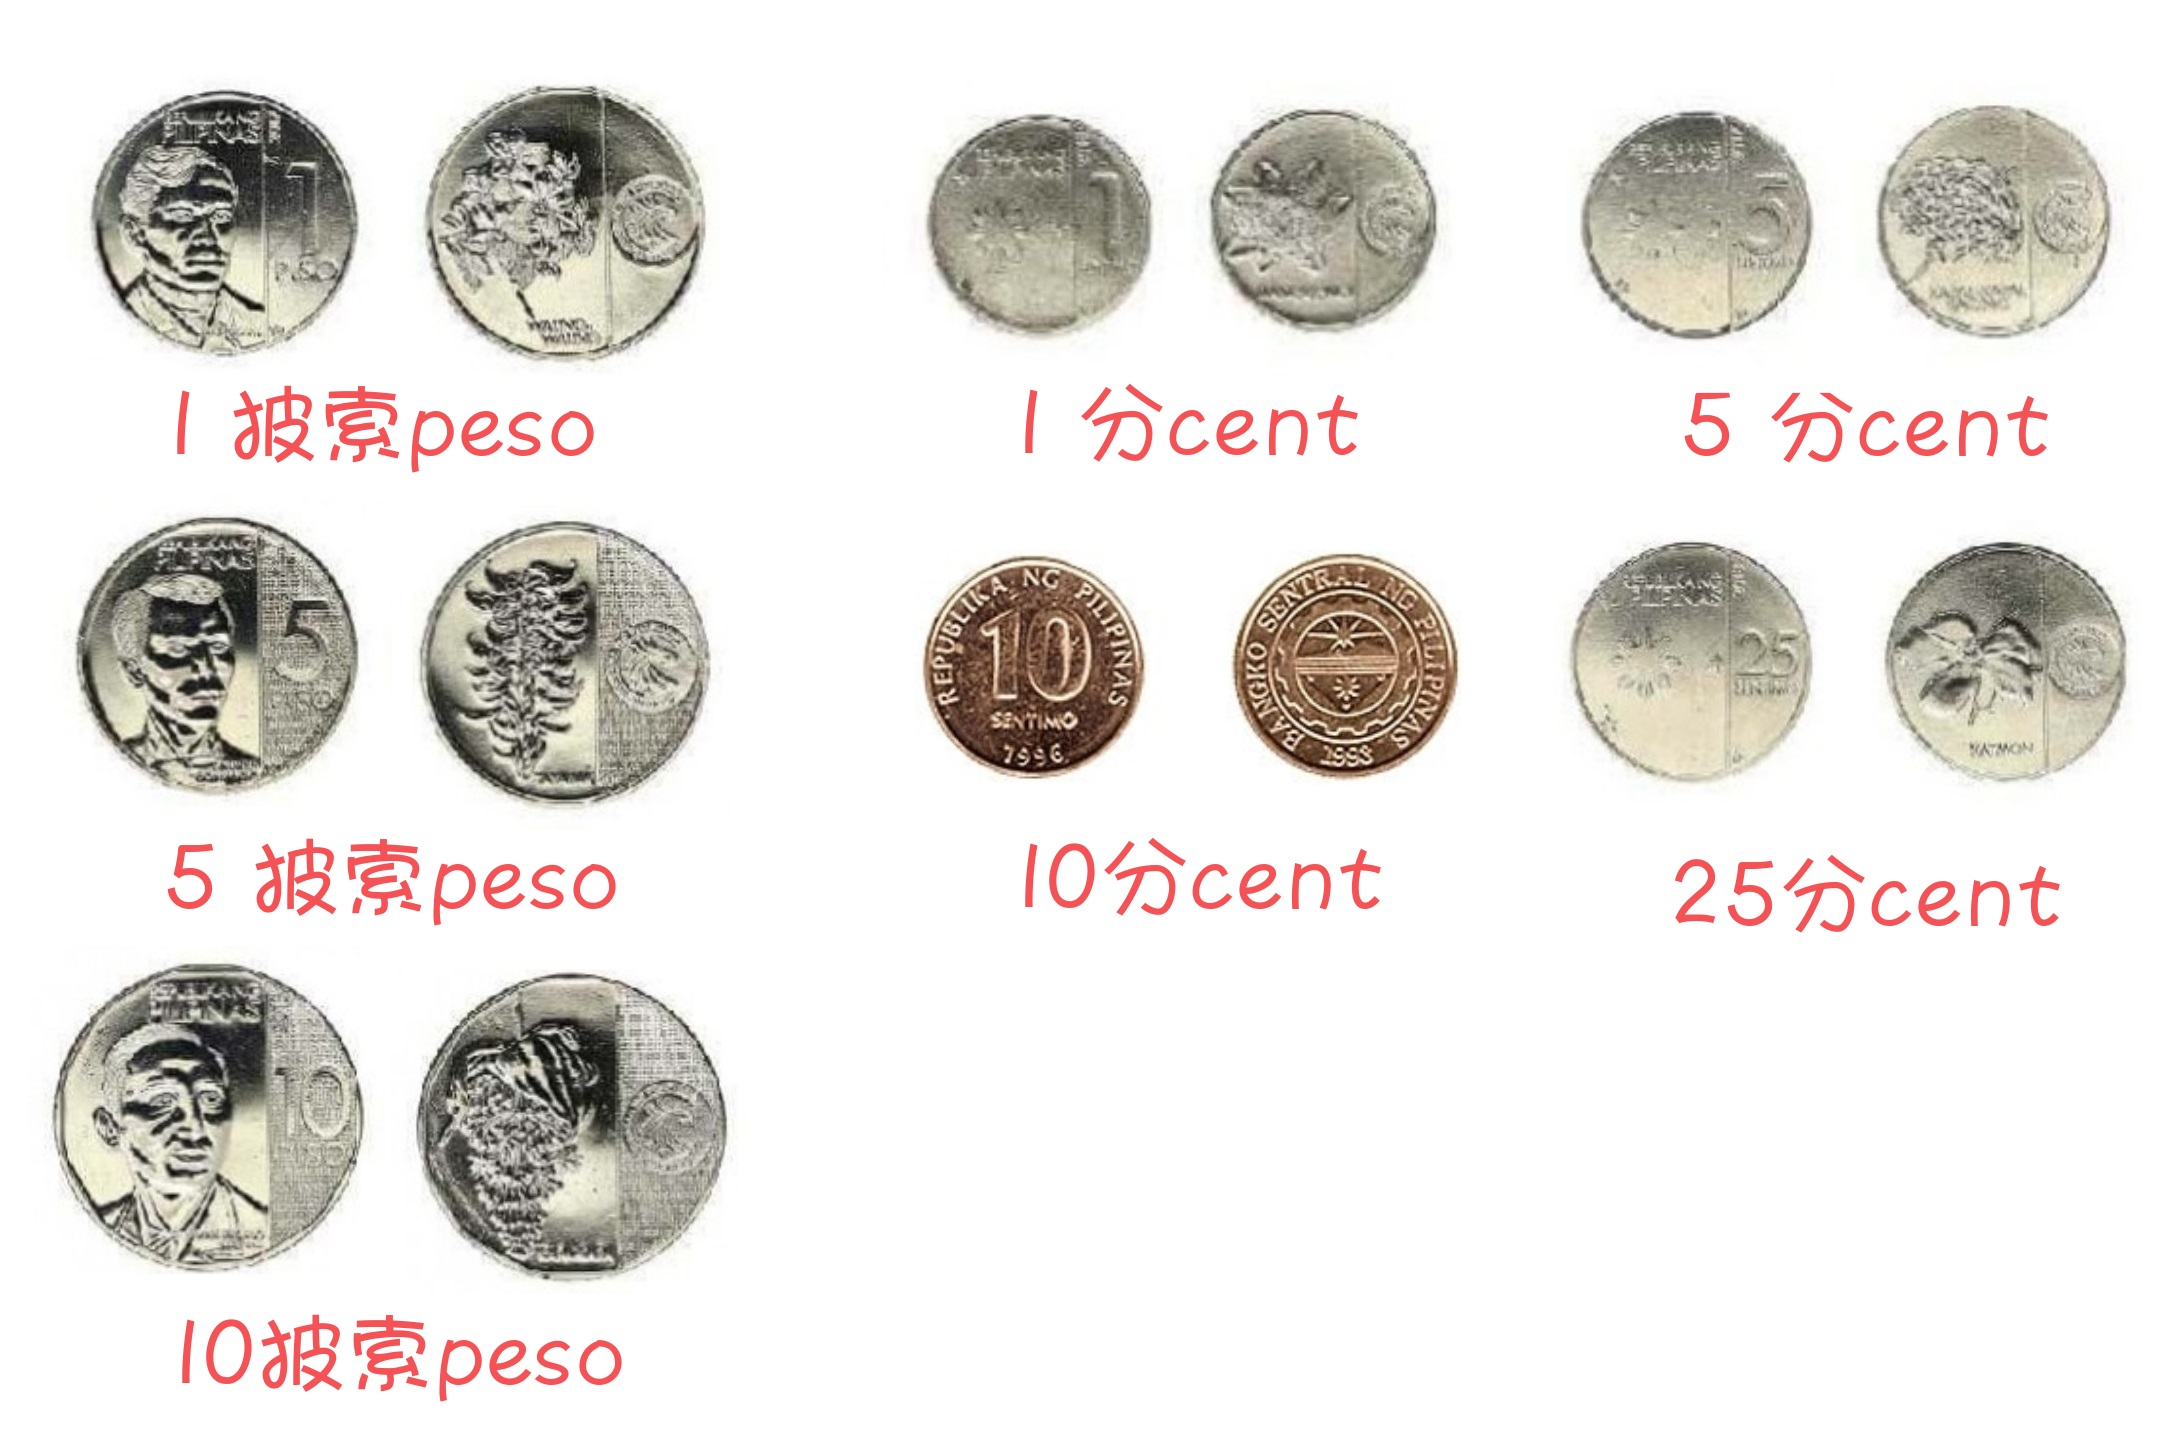 另外菲律宾在2018年发行了新版的硬币,不过旧版